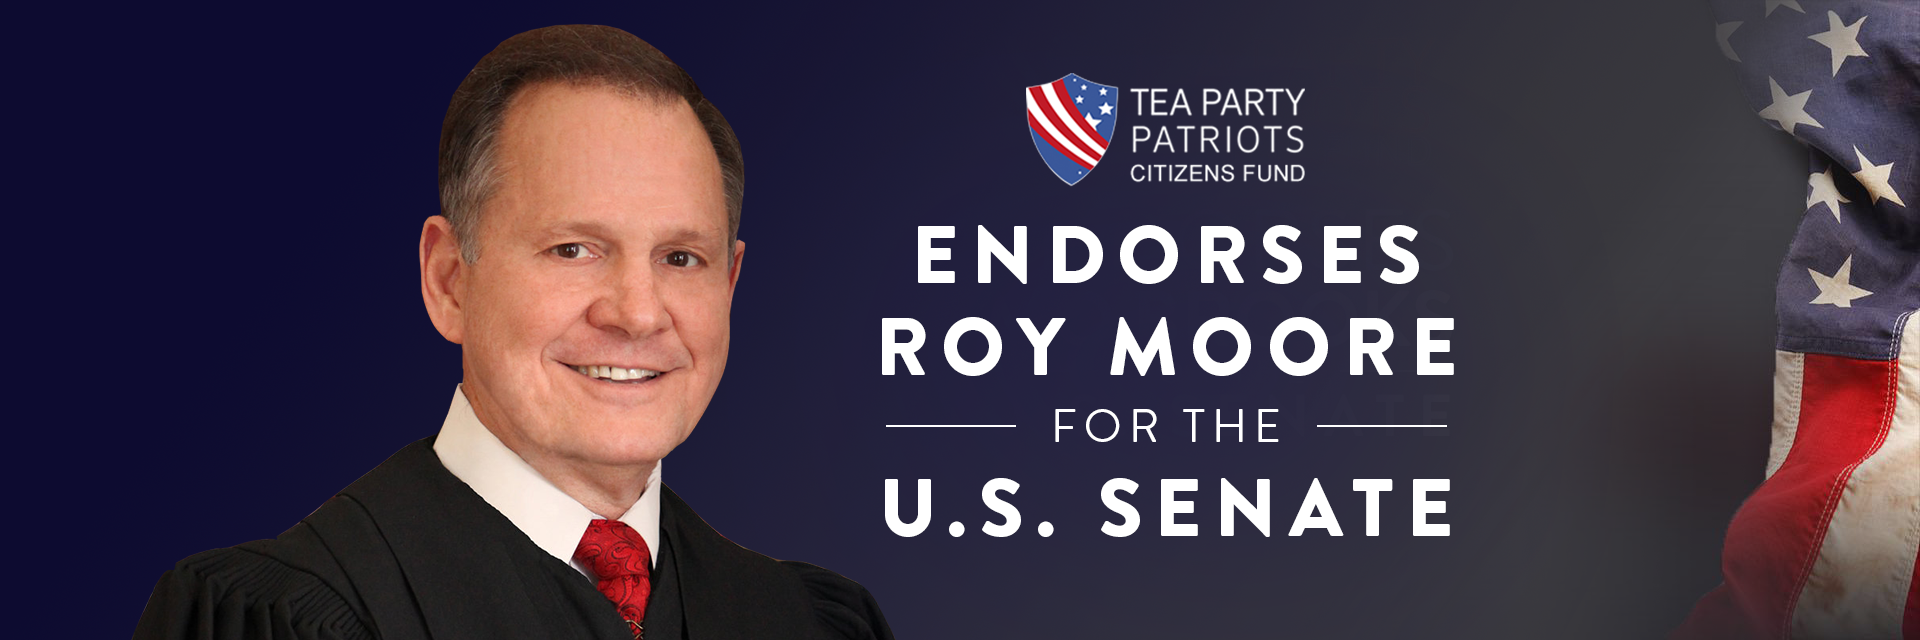 TPP_Roy-Moore-endorsement.png